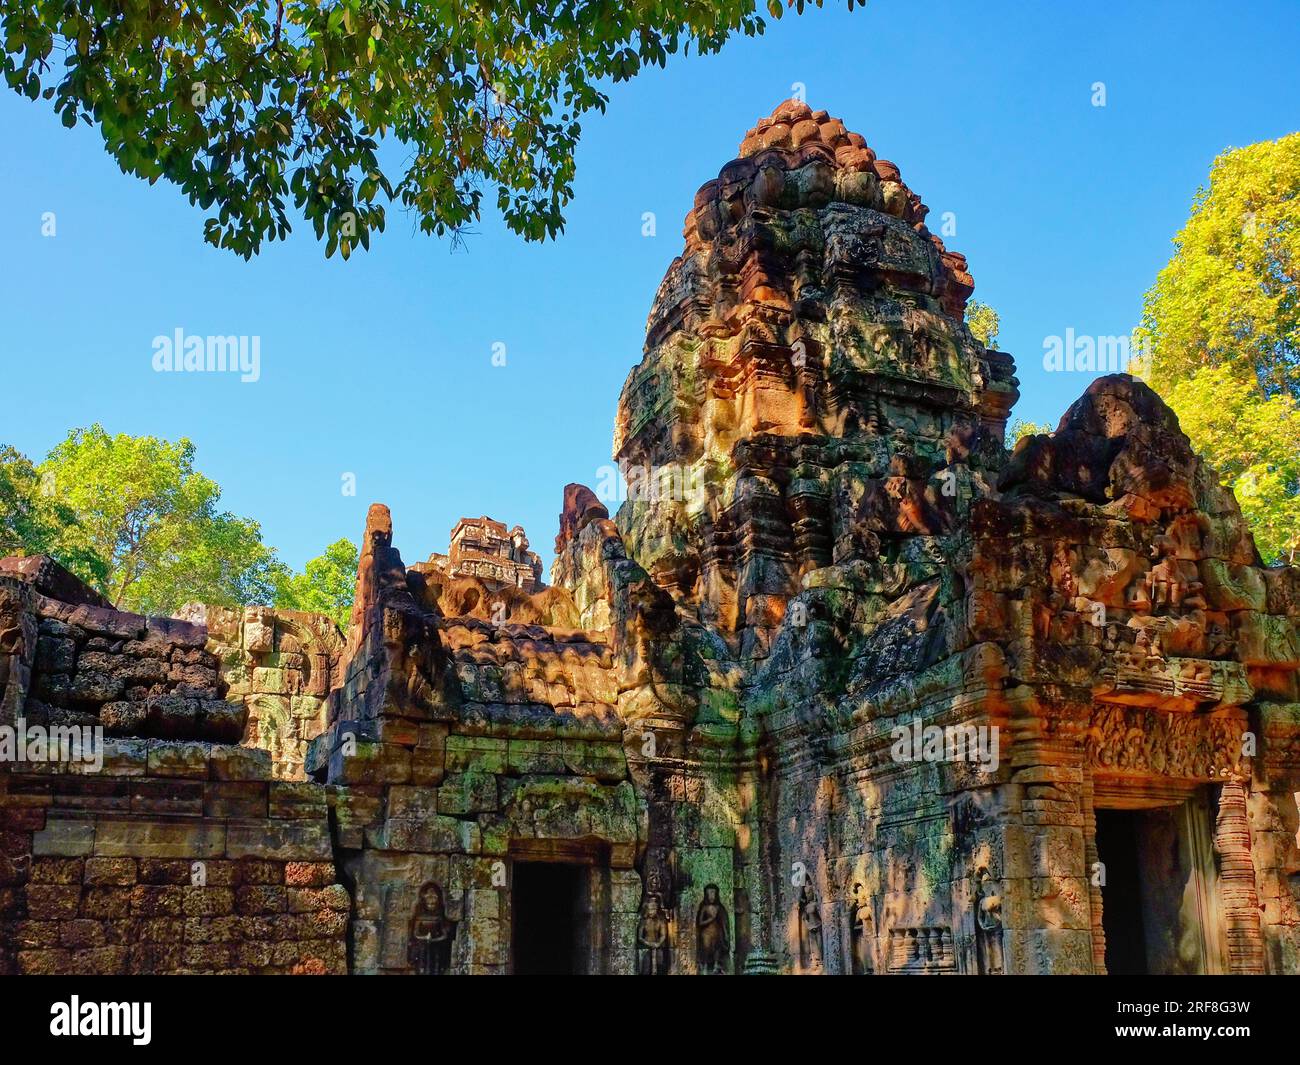 Ein Bild mit Ta Som, einem kleinen Tempel in Angkor, Kambodscha, der Ende des 12. Jahrhunderts für König Jayavarman VII erbaut wurde Stockfoto